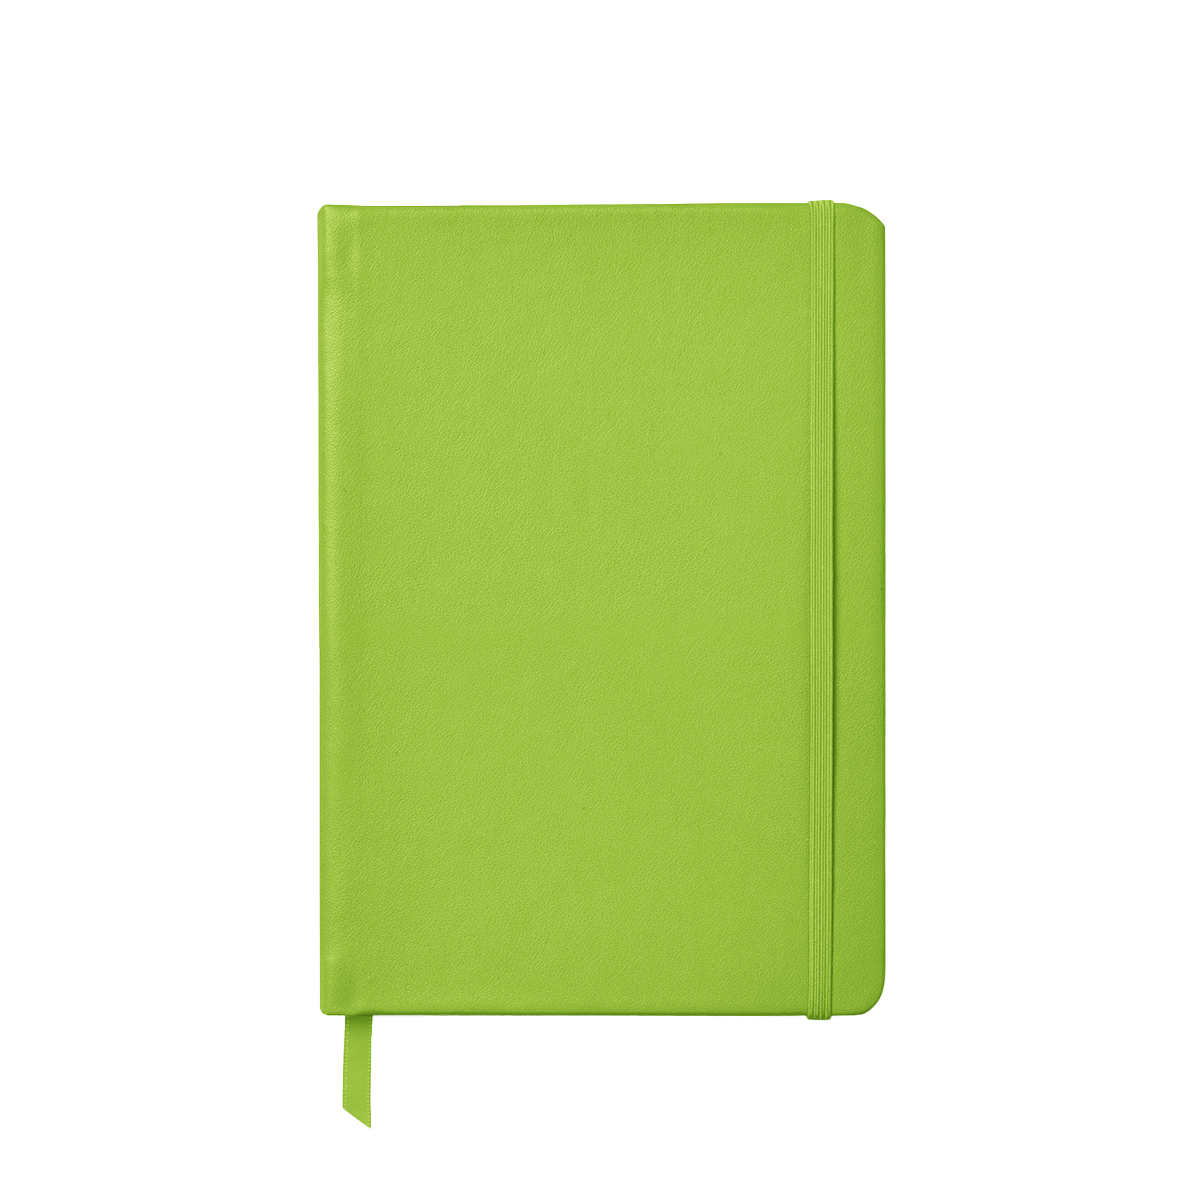 A5 Soft Notebook